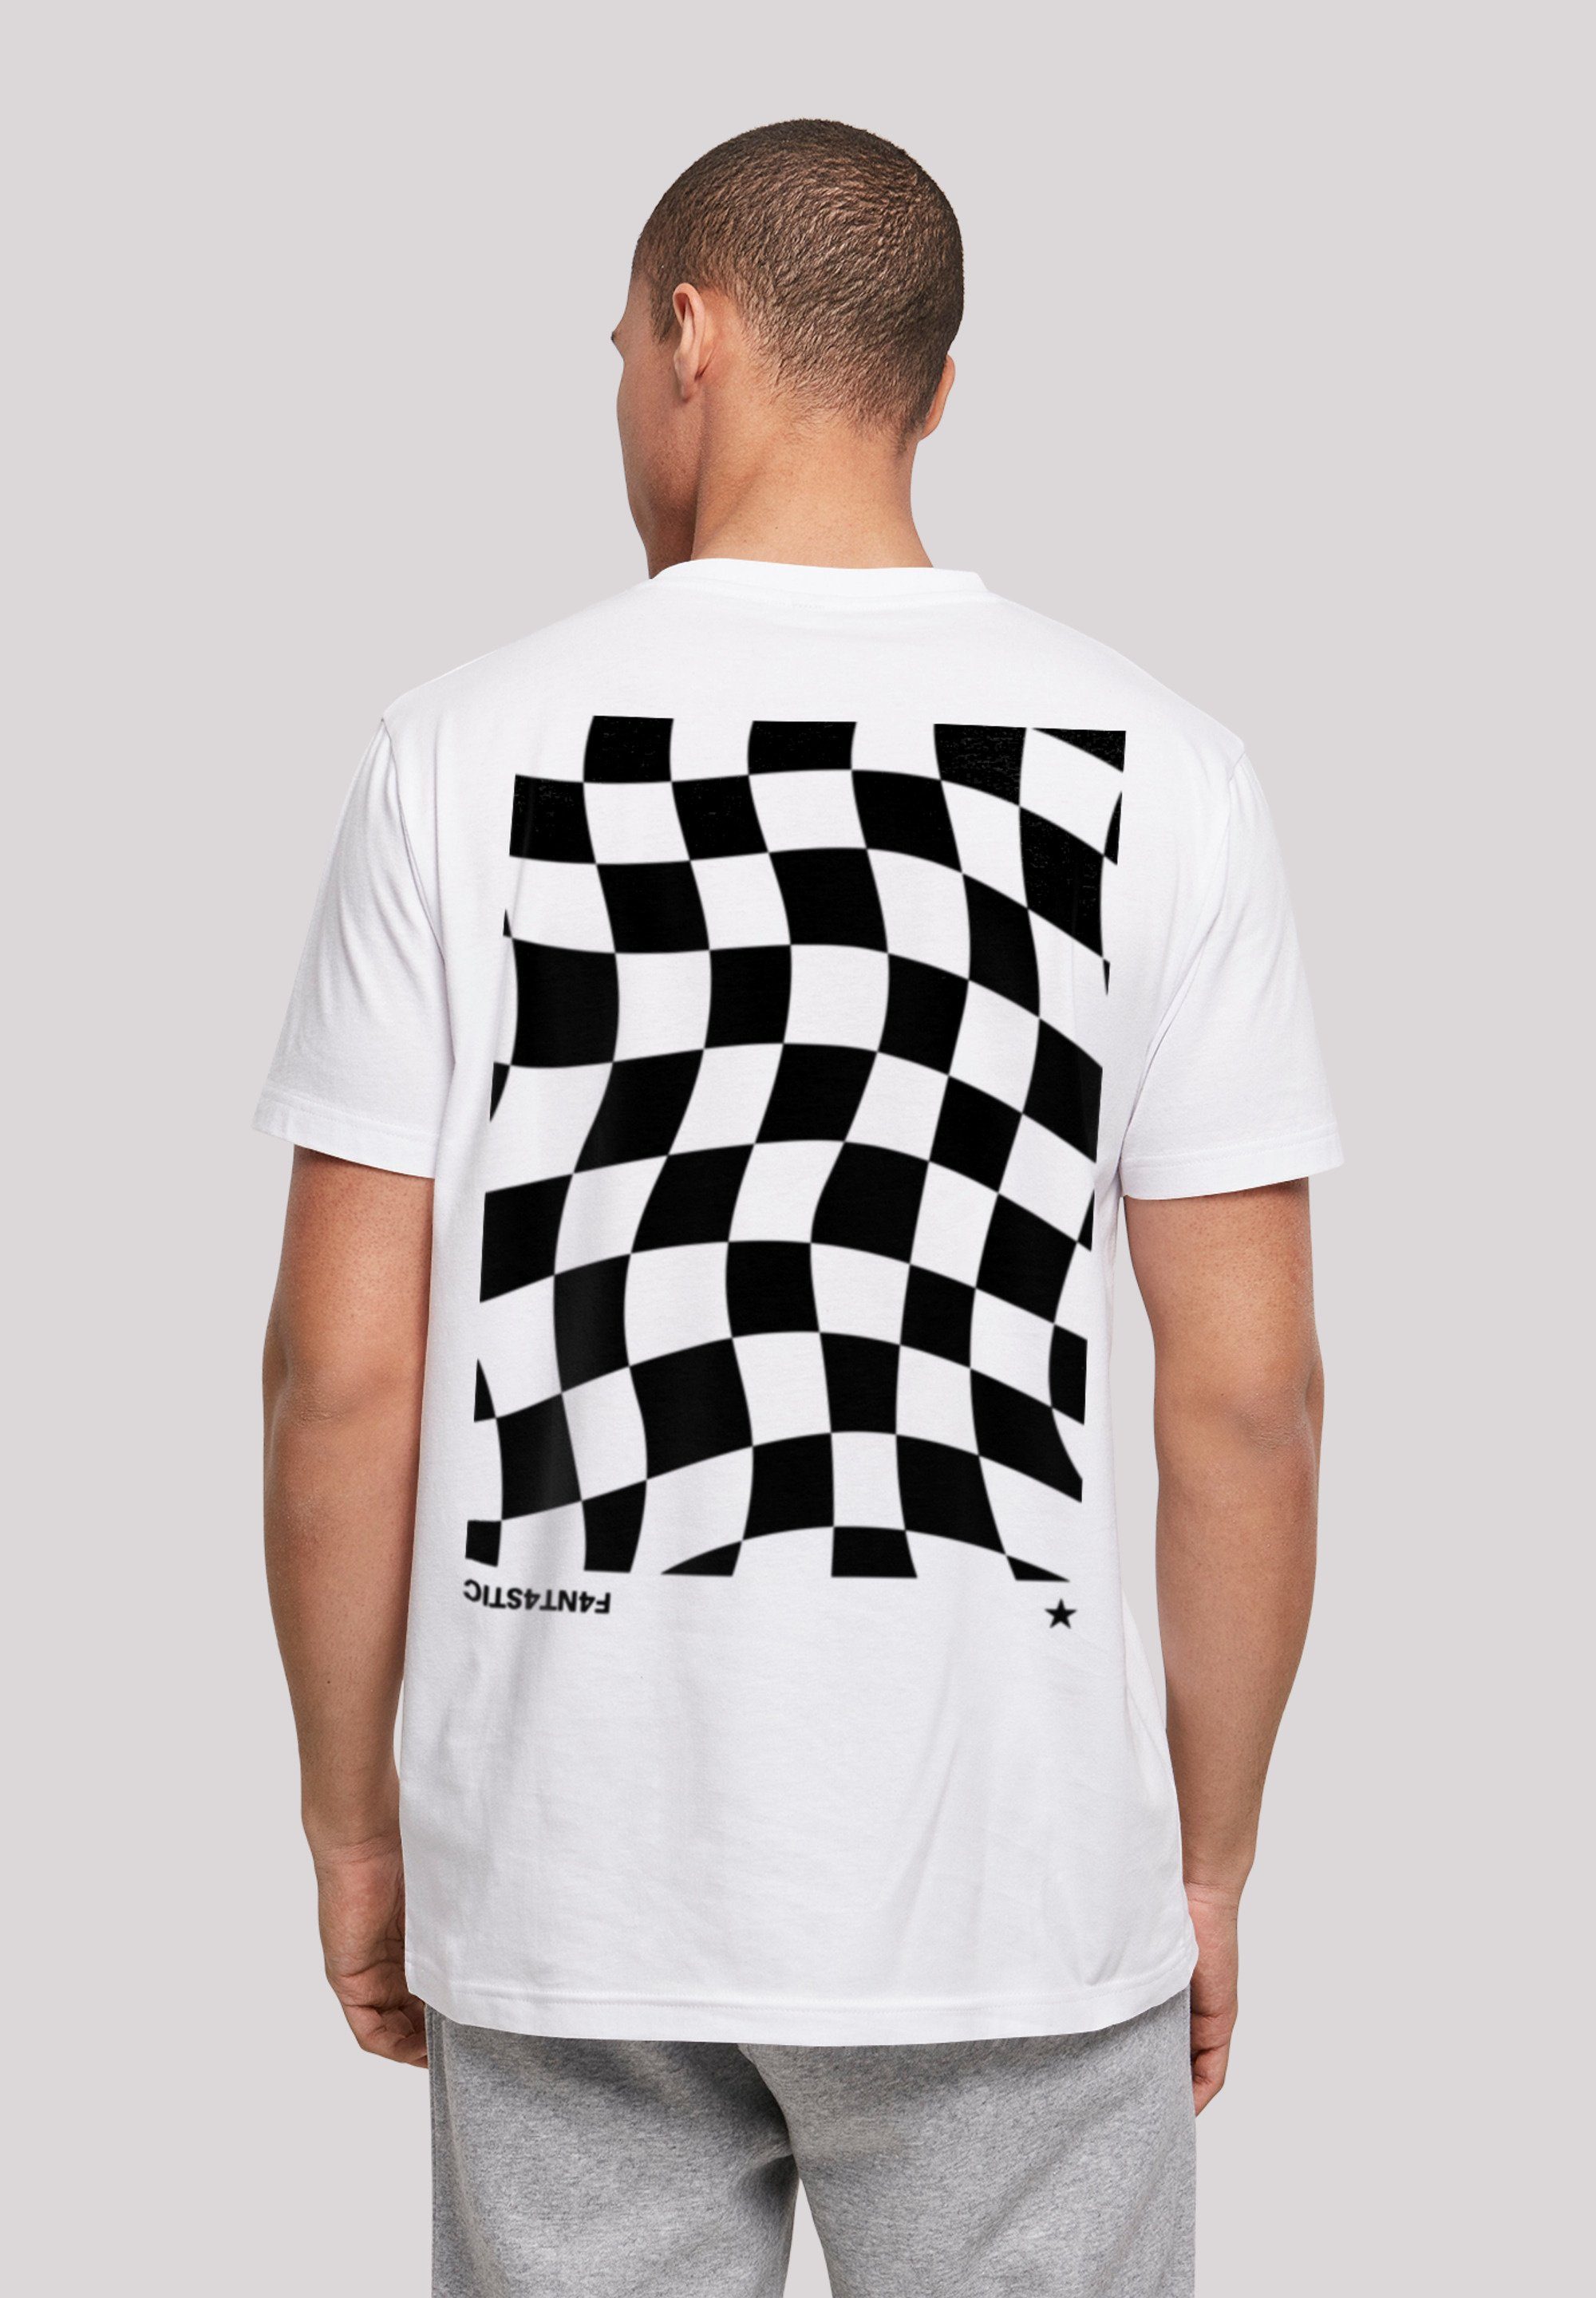 F4NT4STIC T-Shirt Wavy Schach Muster weicher Baumwollstoff mit hohem Sehr Print, Tragekomfort